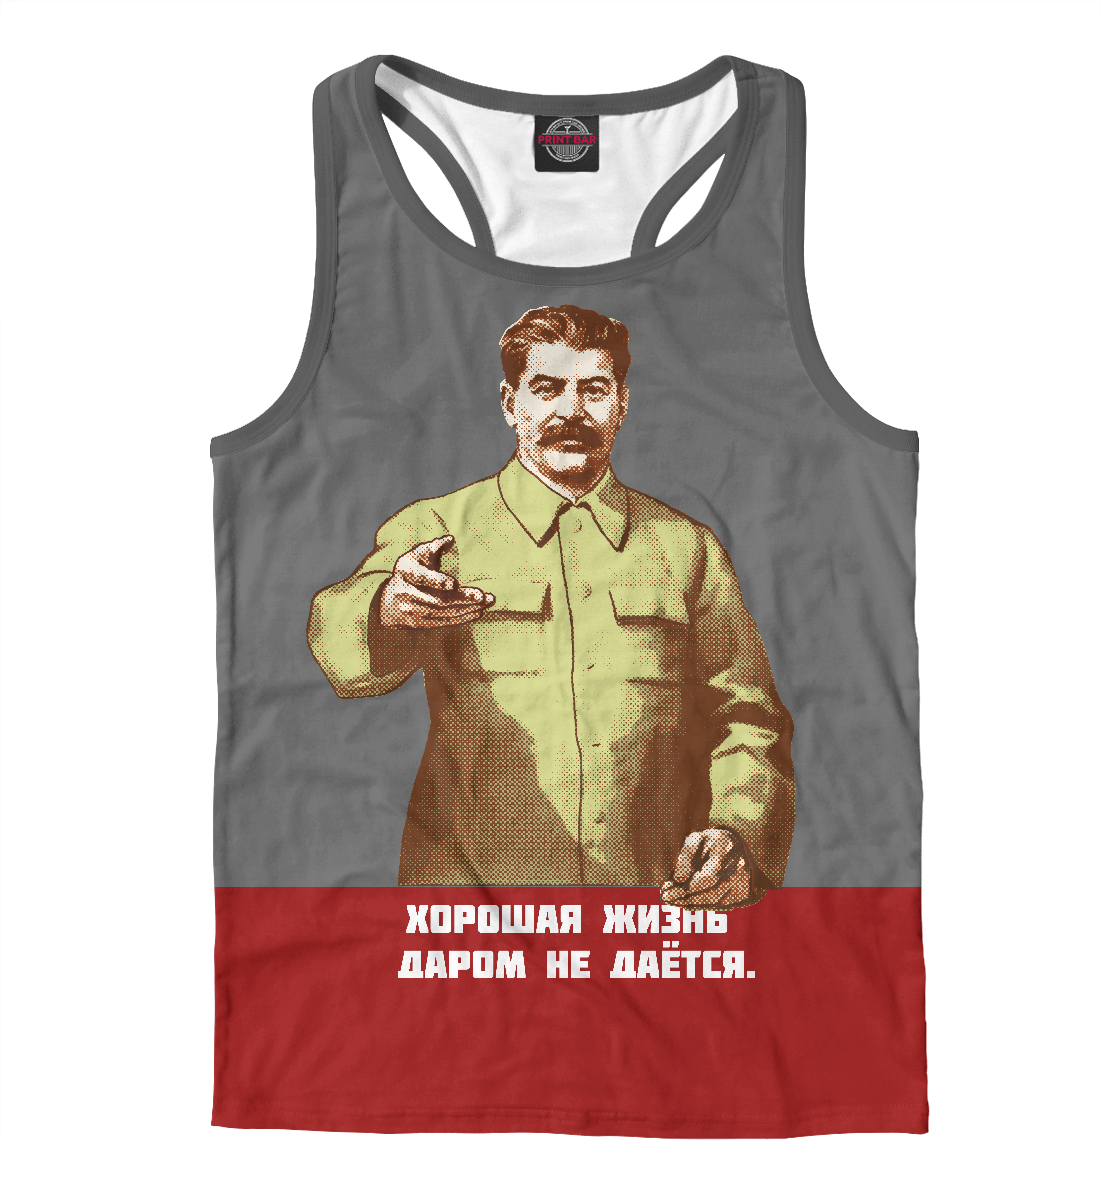 Борцовка Иосиф Сталин ISR-469446-mayb-2